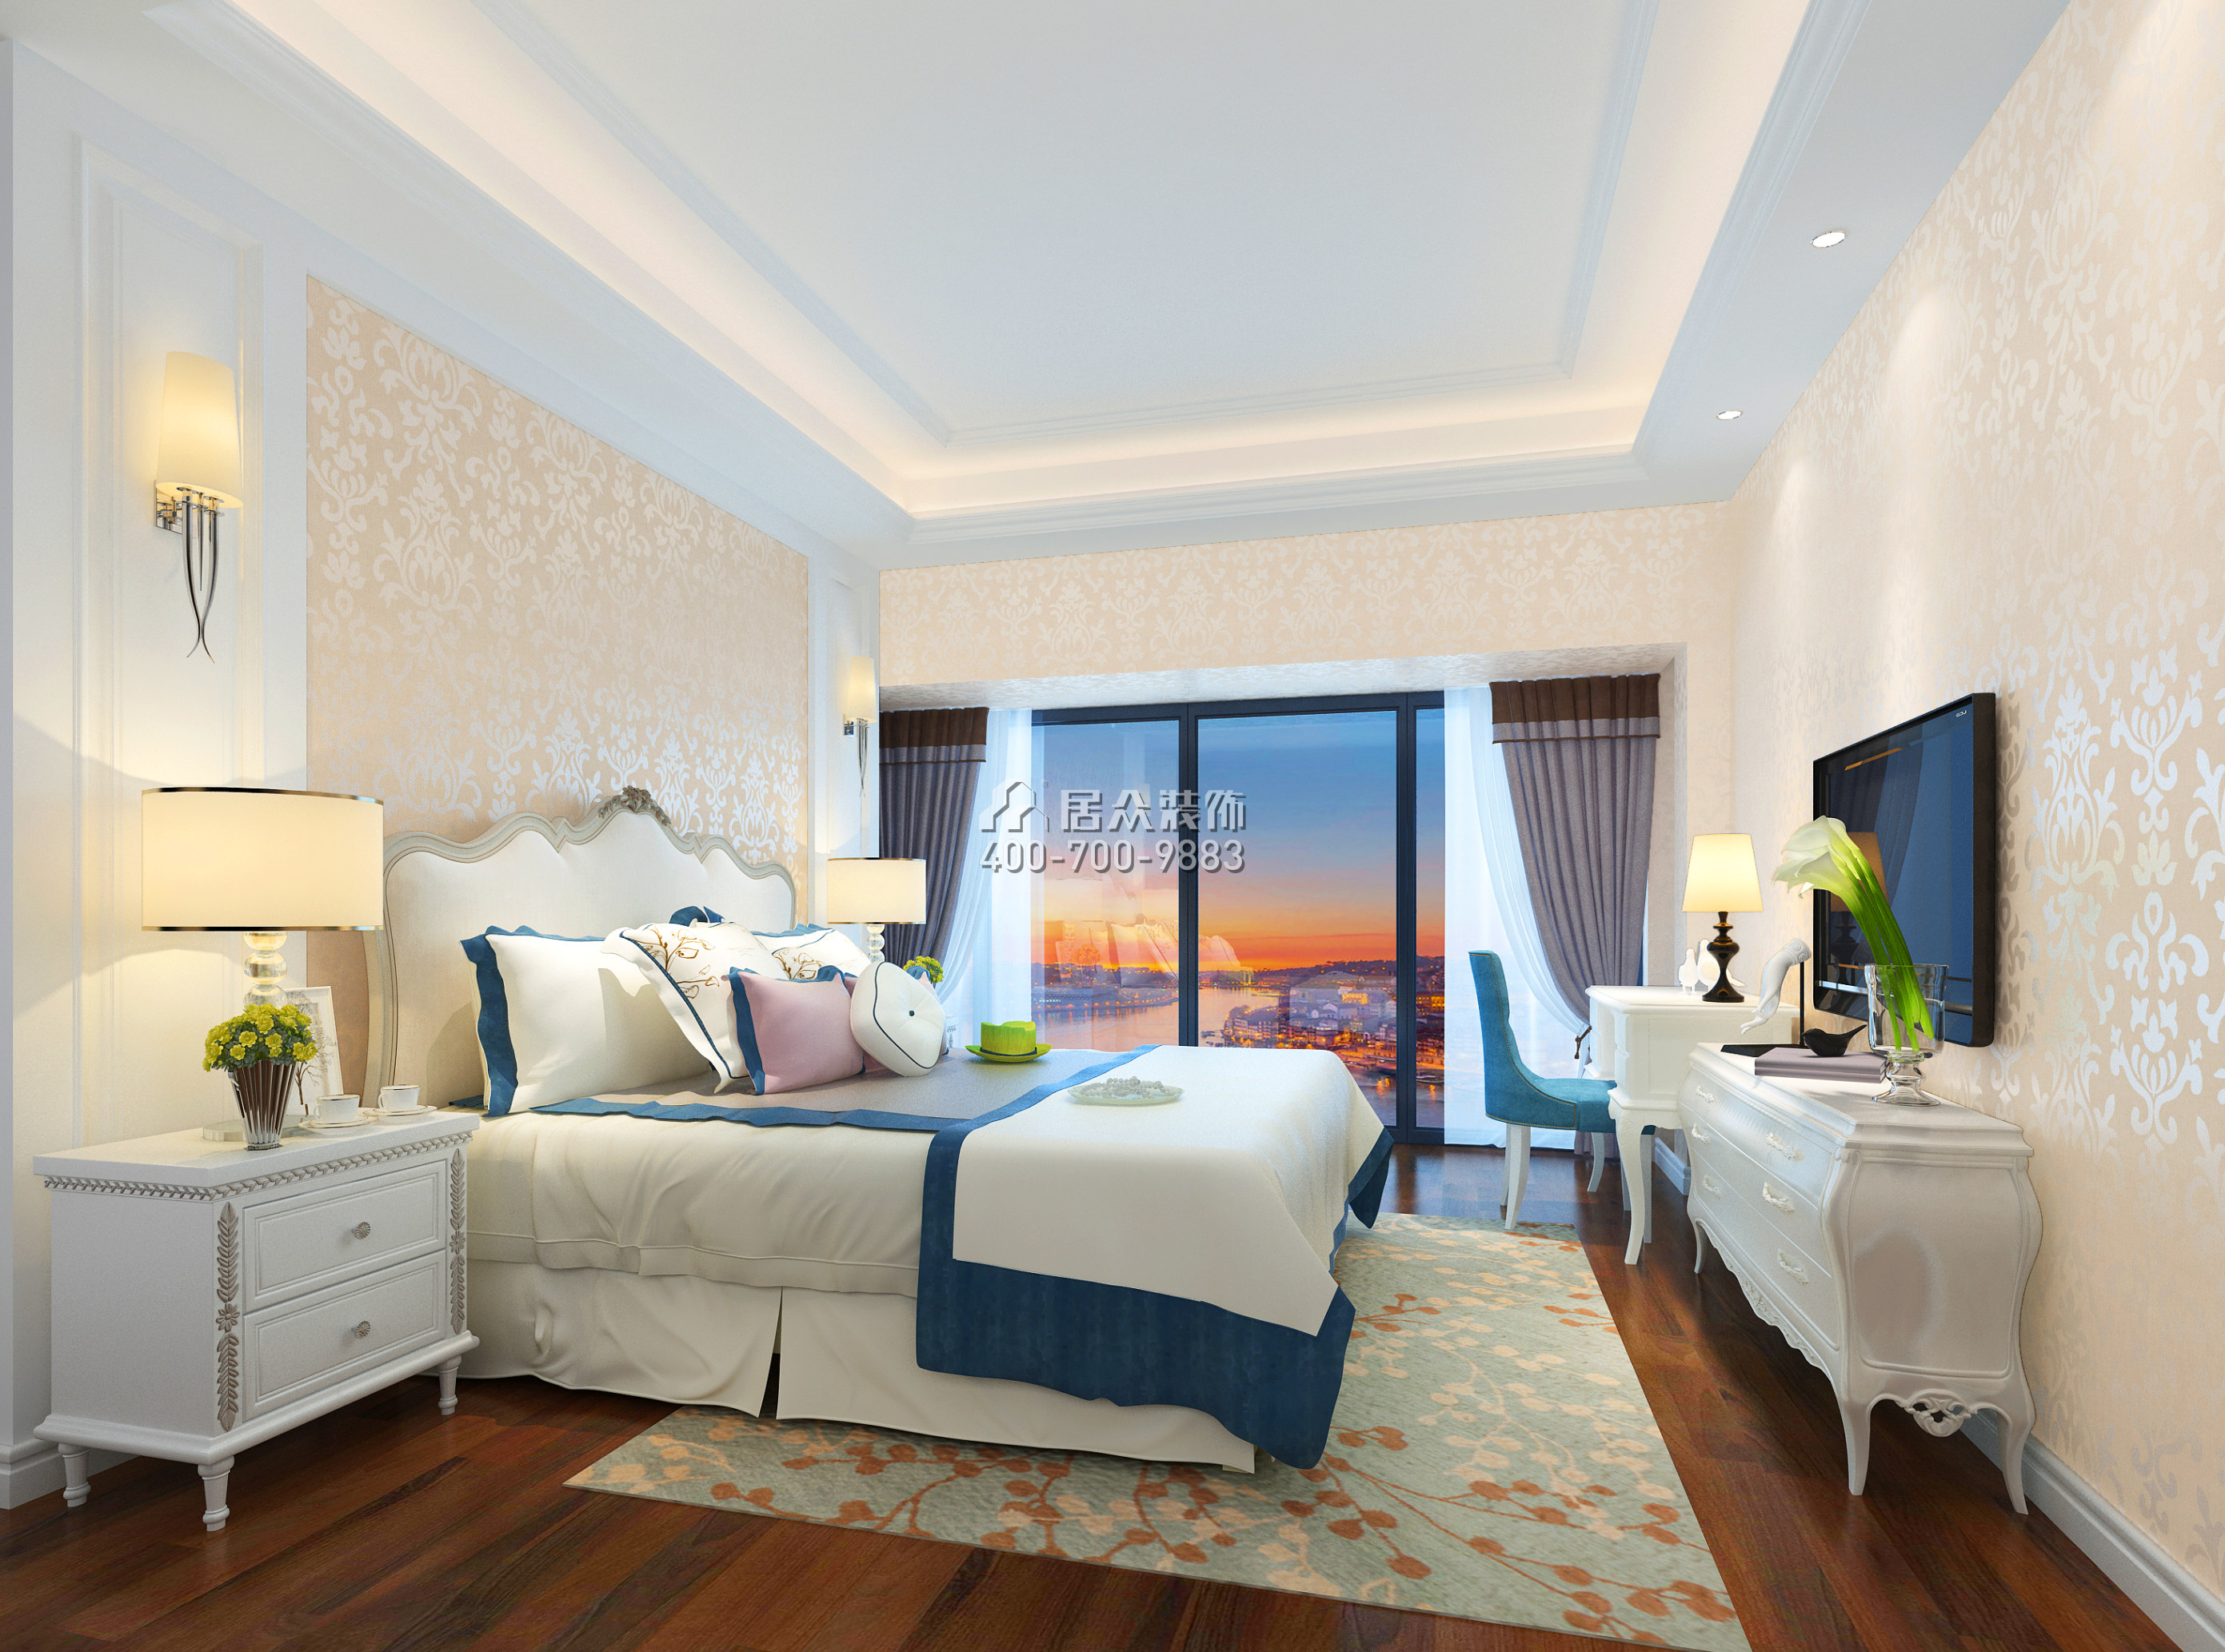 前海丹华园89平方米欧式风格平层户型卧室装修效果图